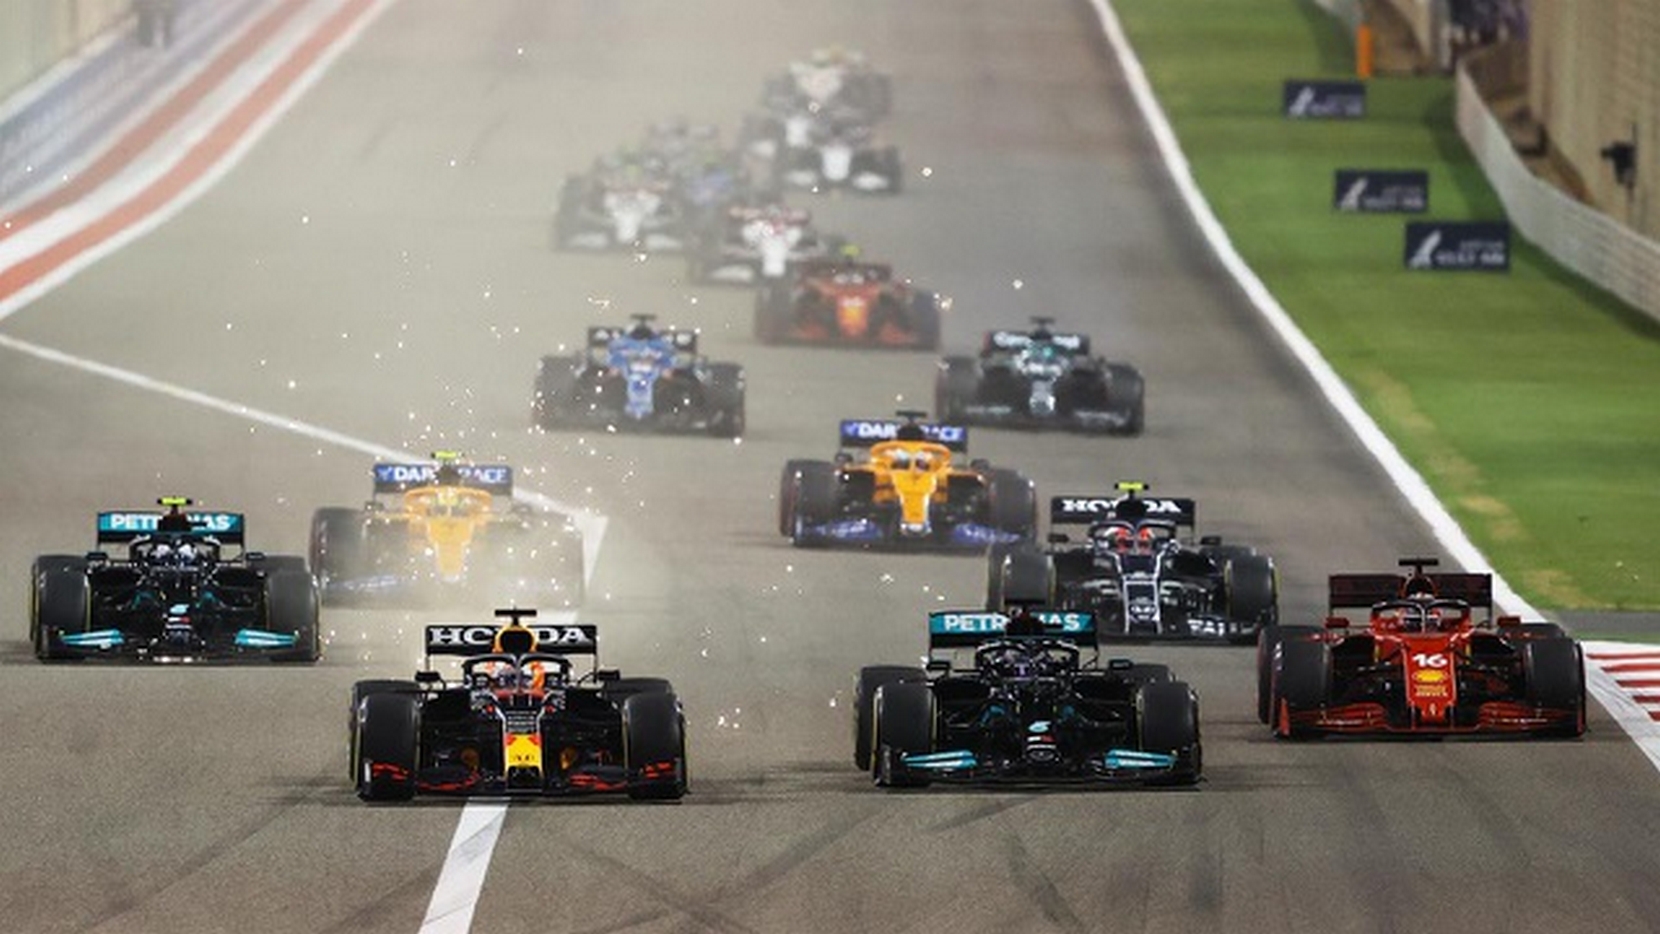 Vòng 31 đến vòng 36: Verstappen và Hamilton vượt qua Bottas, Russell bị phạt vì chạy quá tốc độ pit-lane